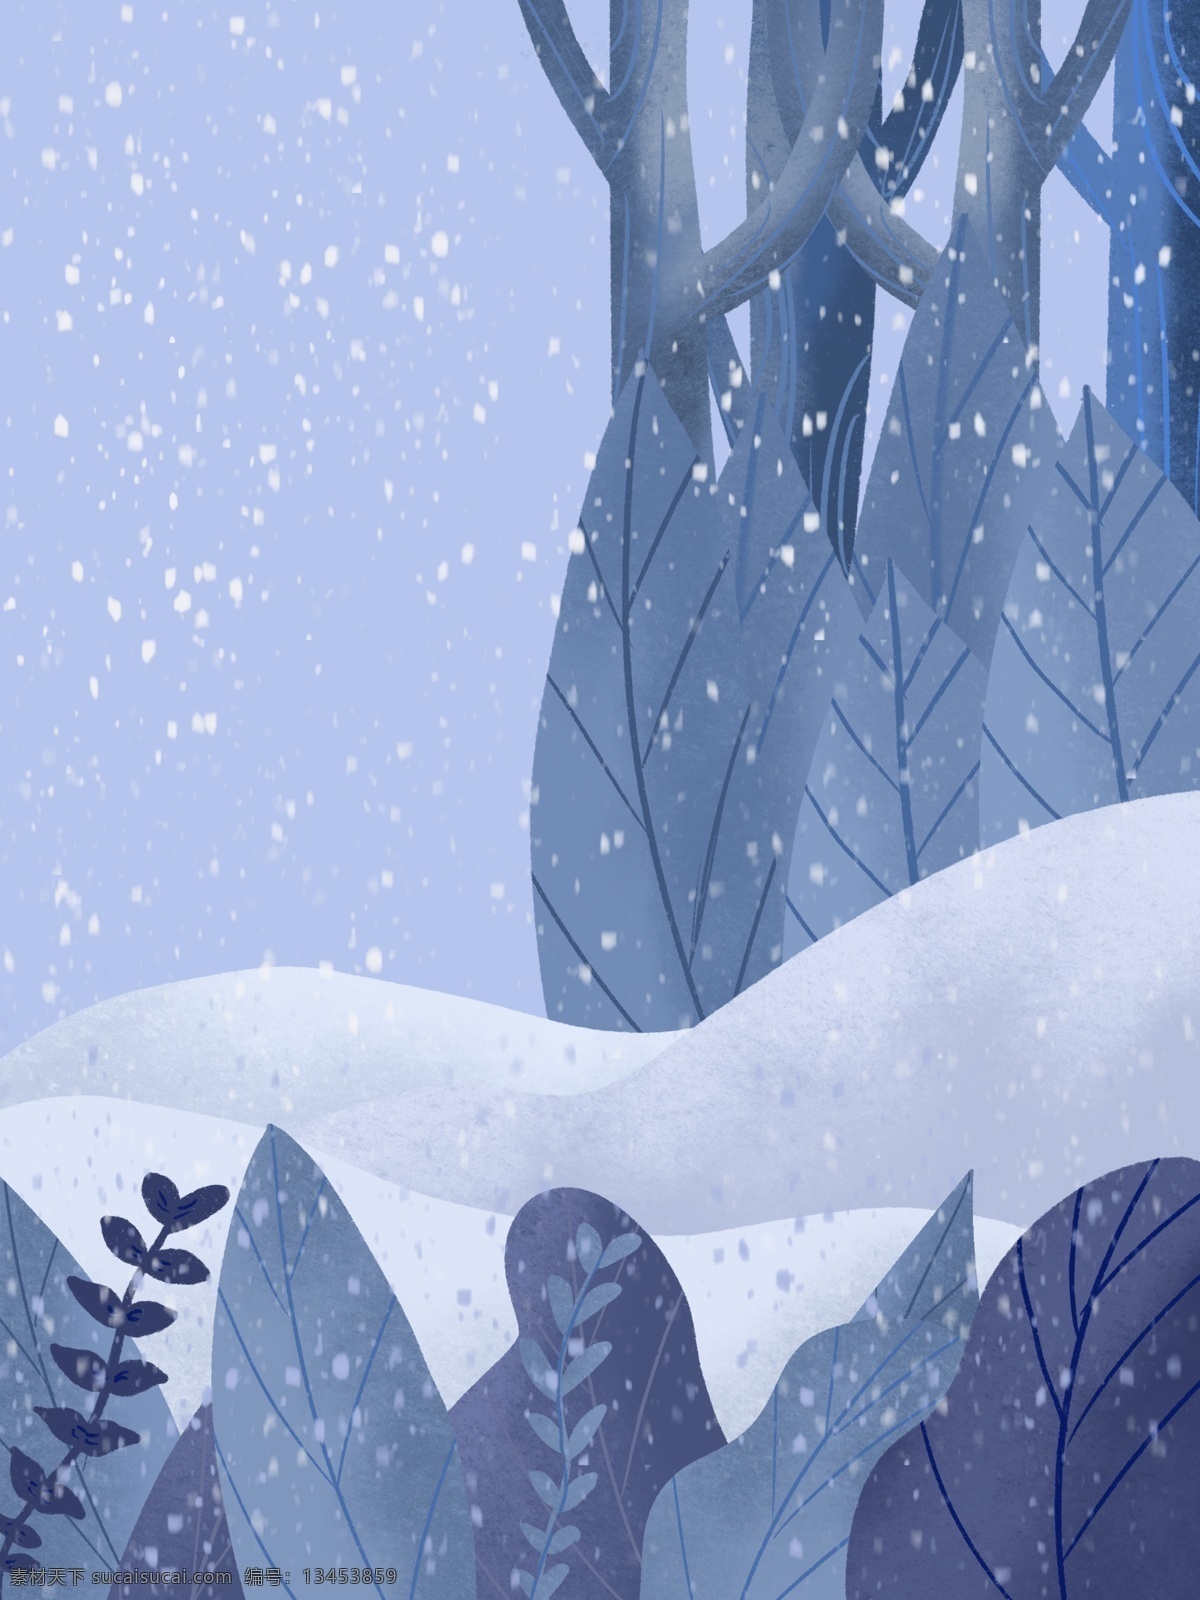 蓝色 唯美 冬季 雪地 雪景 背景 手绘背景 下雪天背景 蓝色背景 远山背景 风景背景 冬天背景 冬季背景